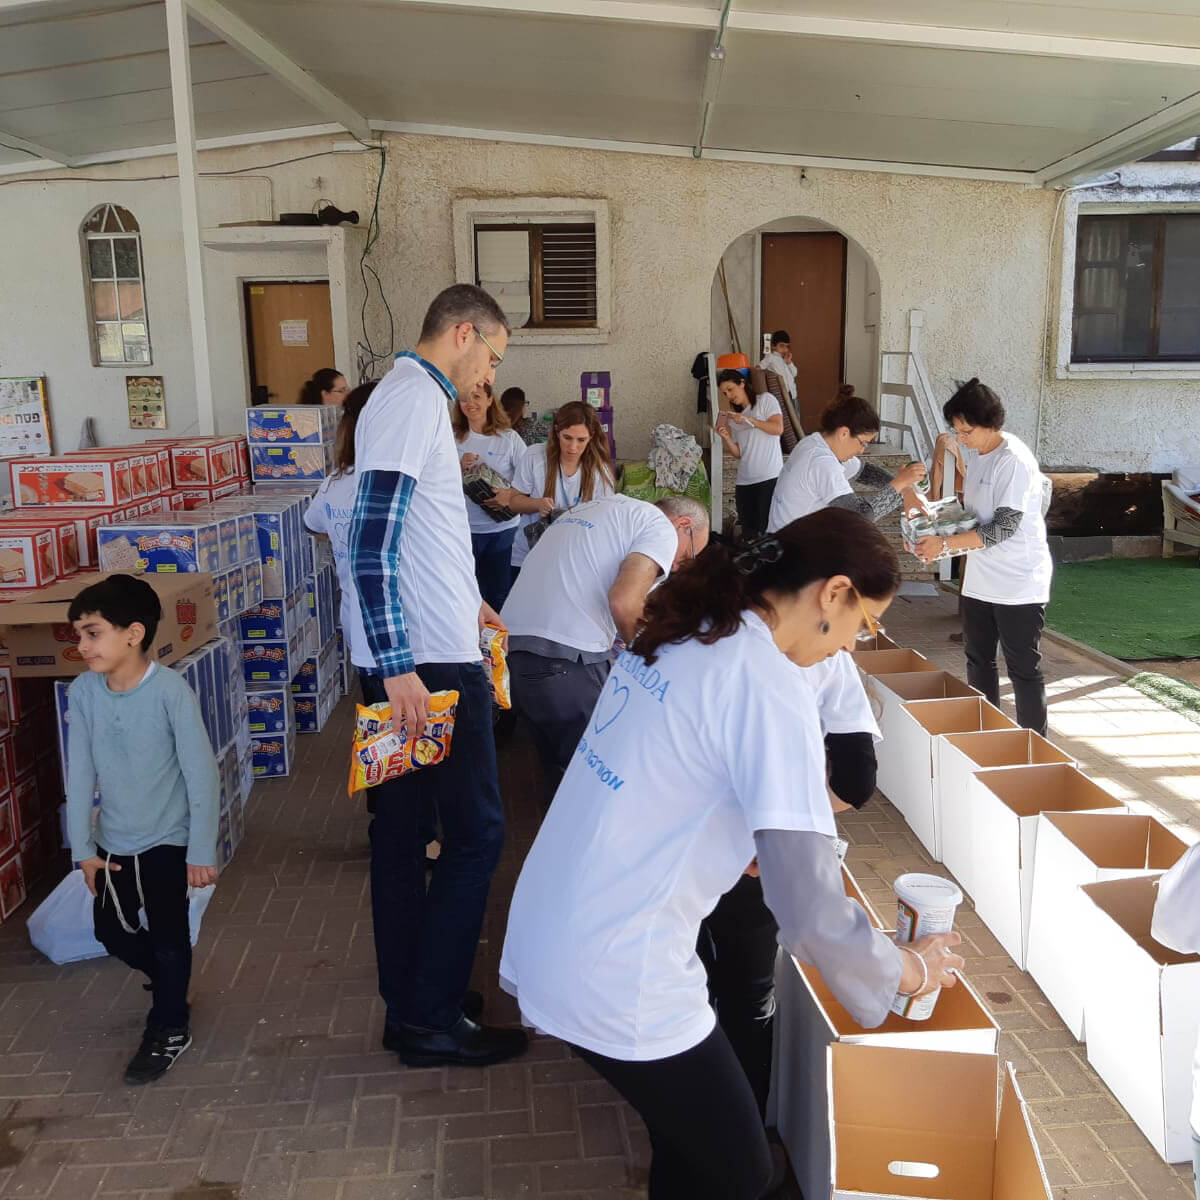 פעילות של מתנדבים באריזת סלי מזון בעמותת לחיות בכבוד